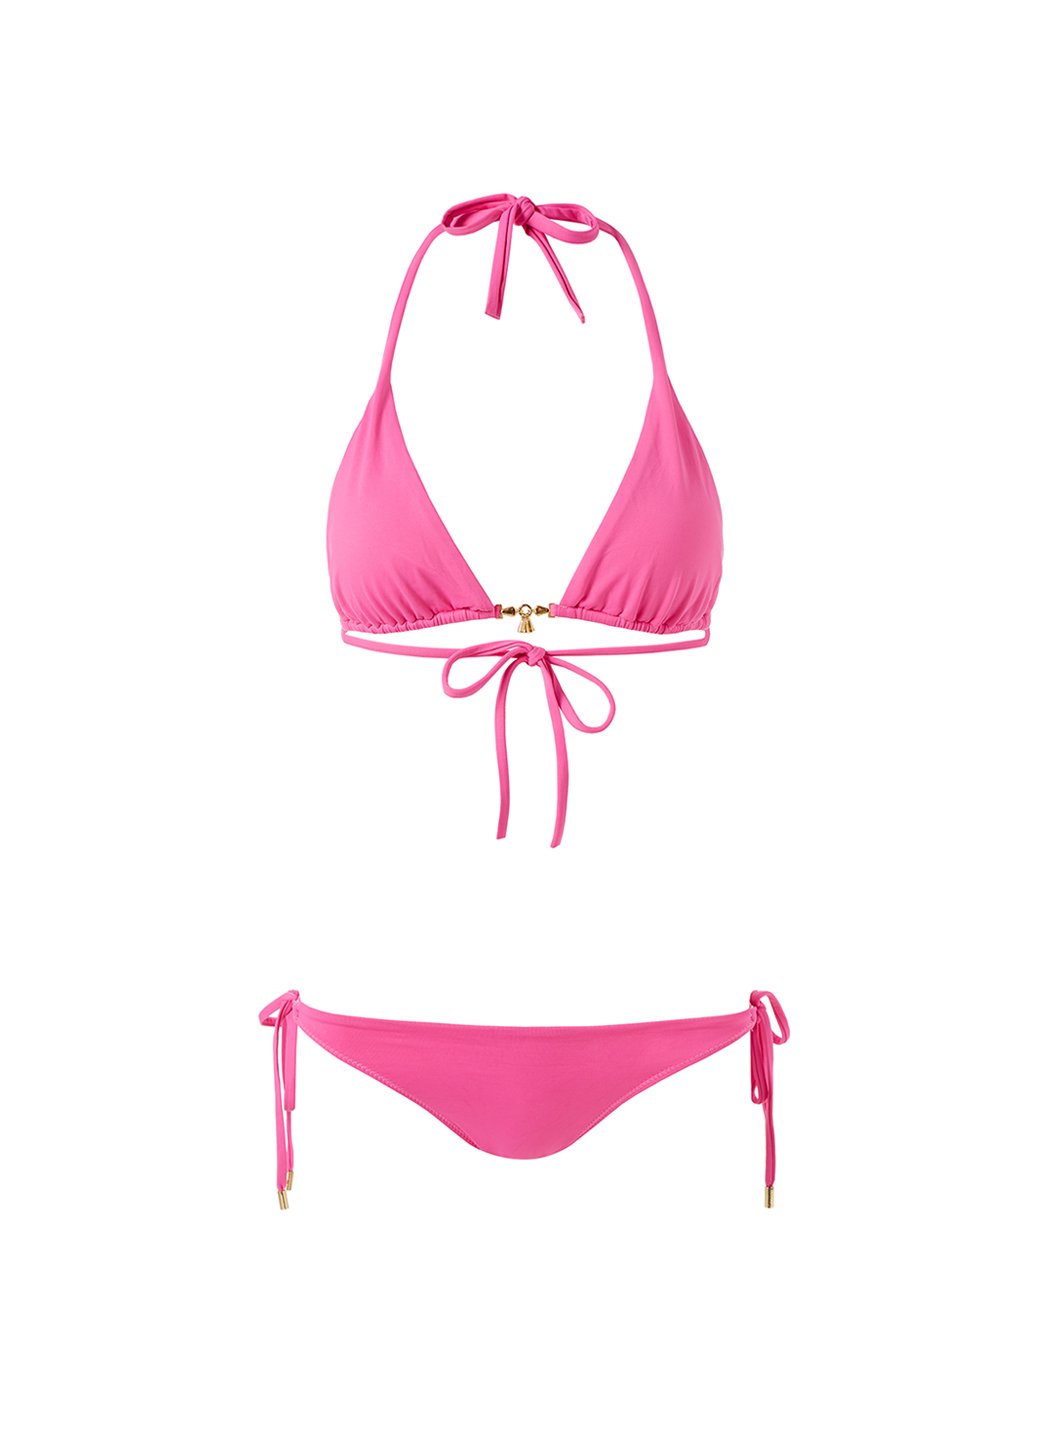 Adara Swimwear Tulum Bikini Top - Pink Swimwear Large